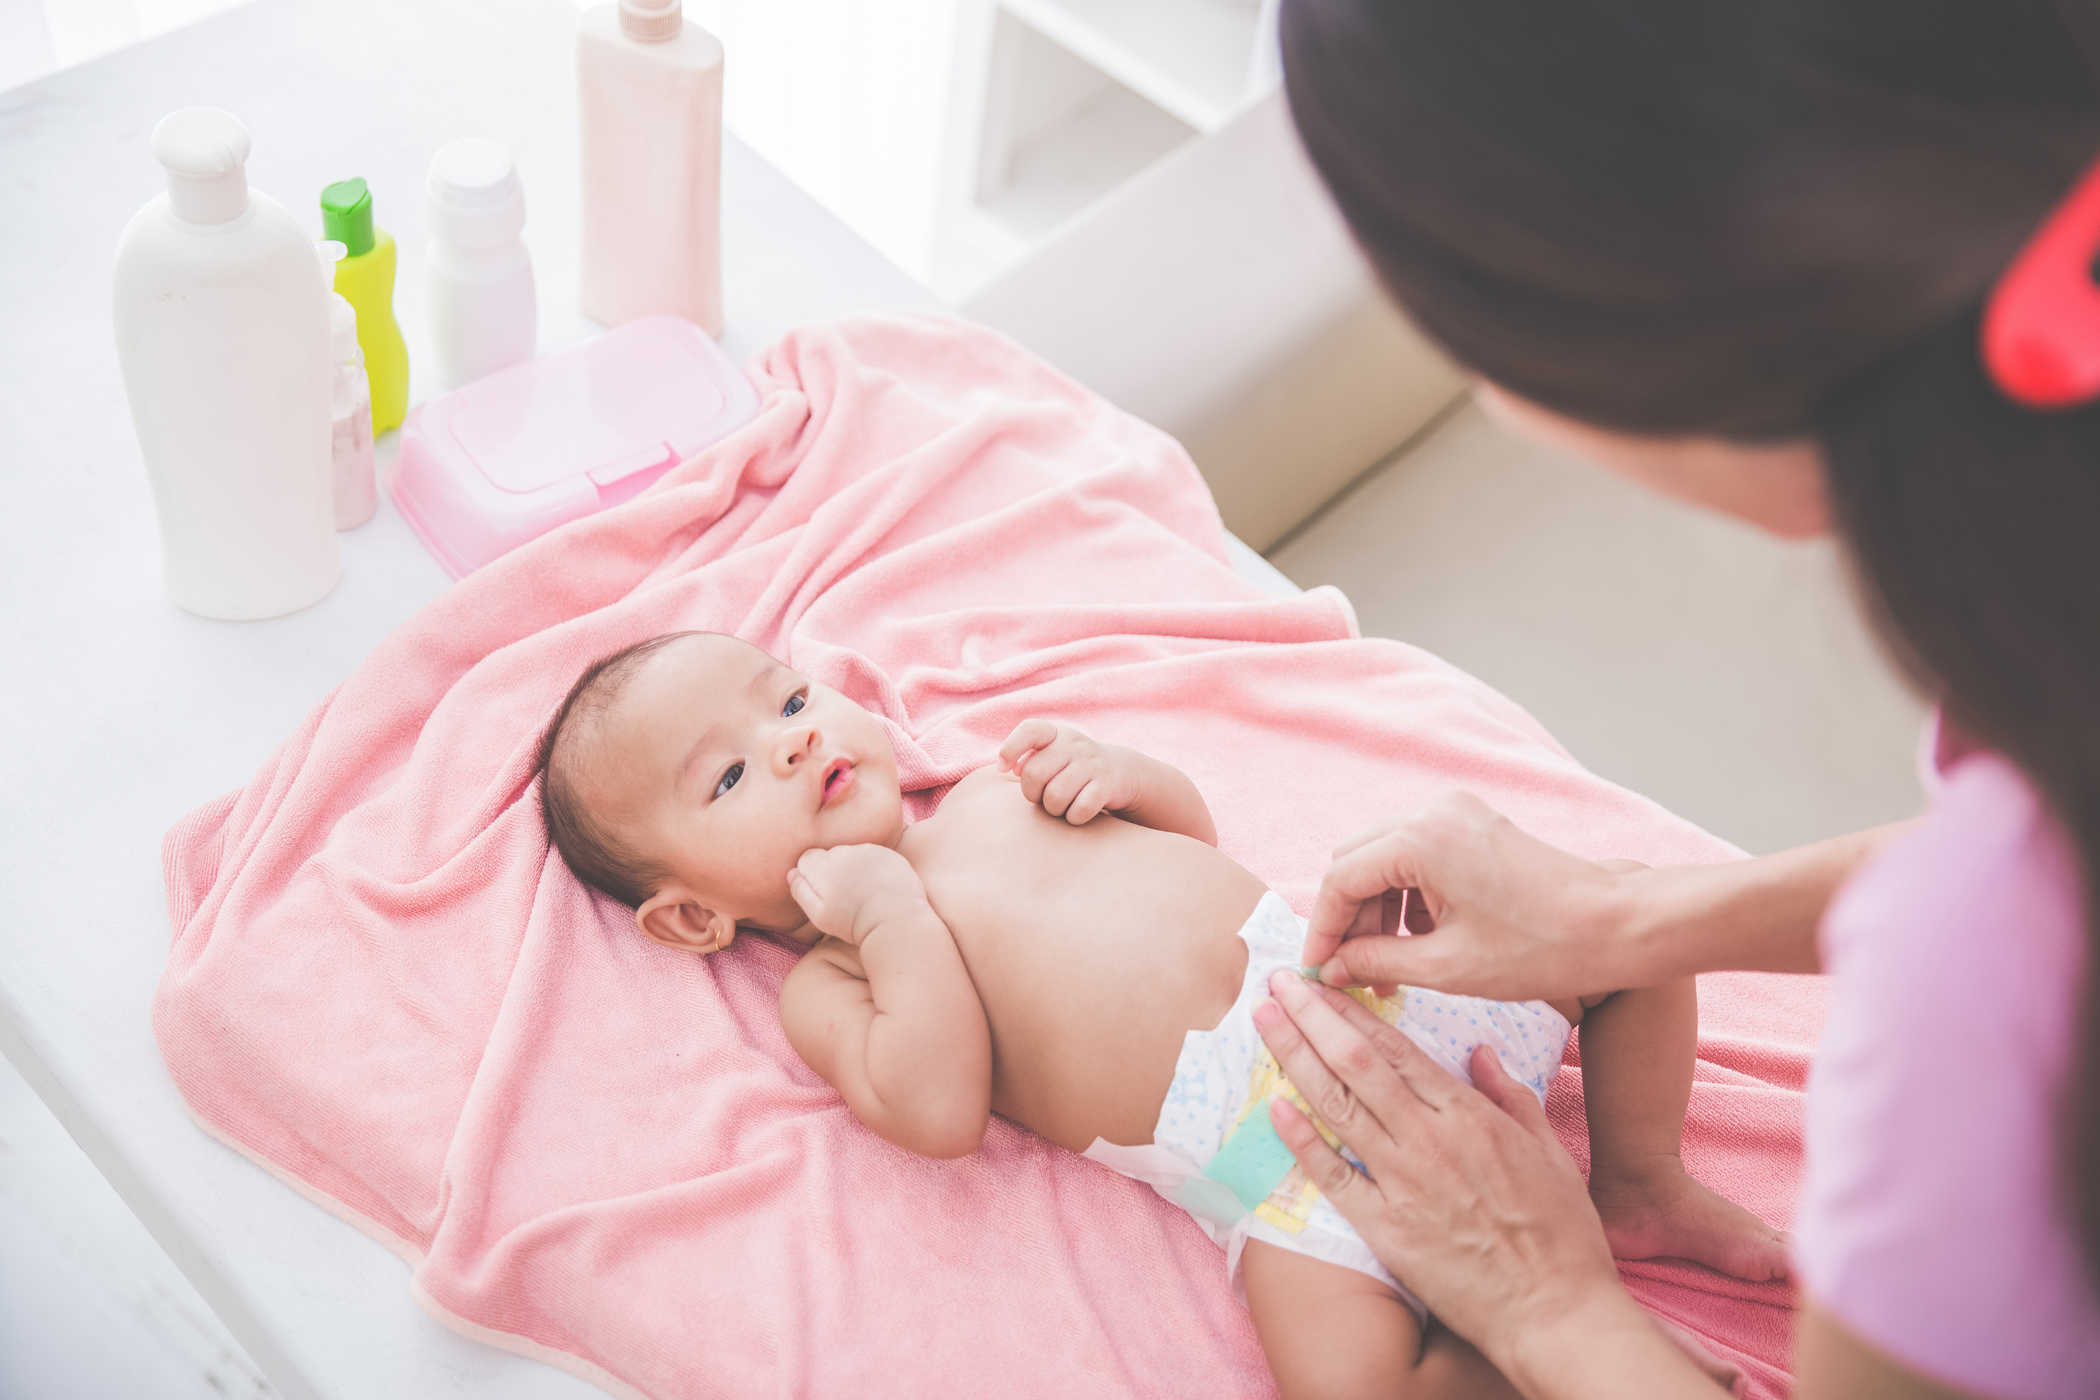 Cara membersihkan badan bayi dari kepala, tali pusat, ke organ intim